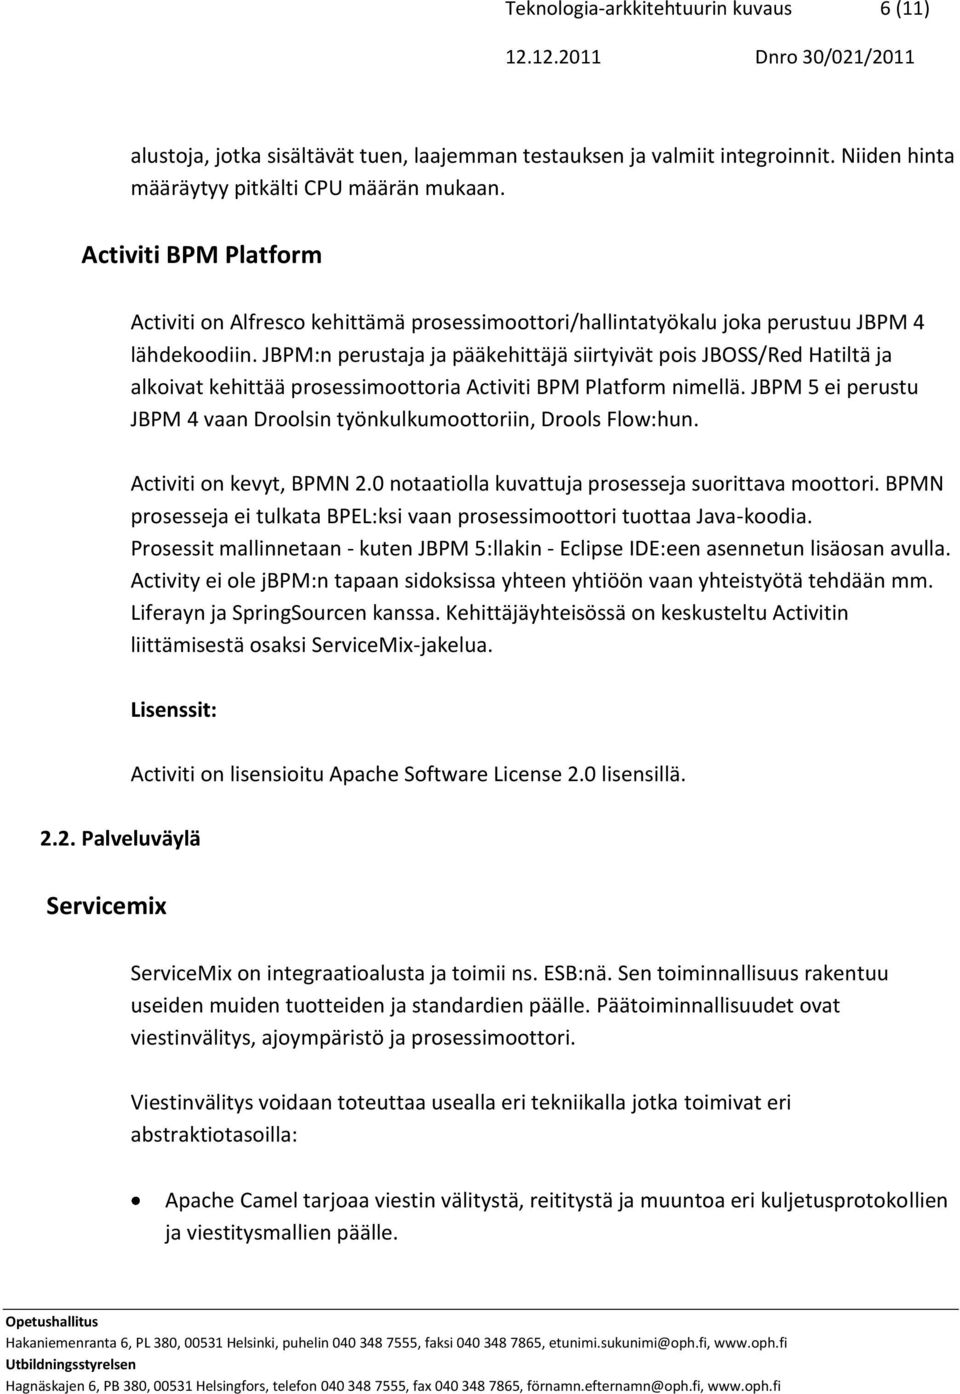 JBPM:n perustaja ja pääkehittäjä siirtyivät pois JBOSS/Red Hatiltä ja alkoivat kehittää prosessimoottoria Activiti BPM Platform nimellä.